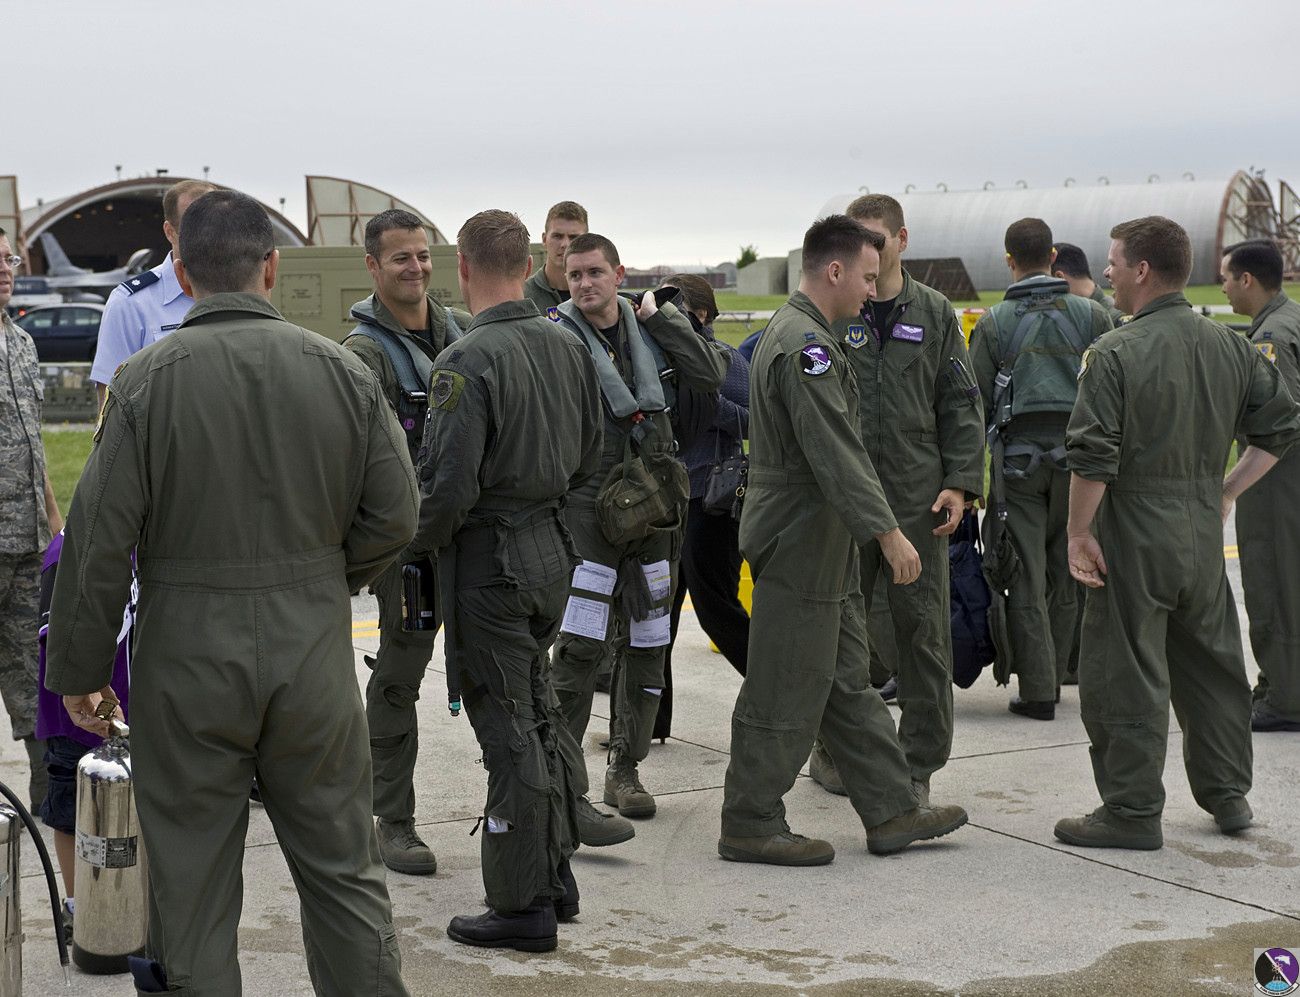 lt.col. lance landrum   buzzards pilots 3